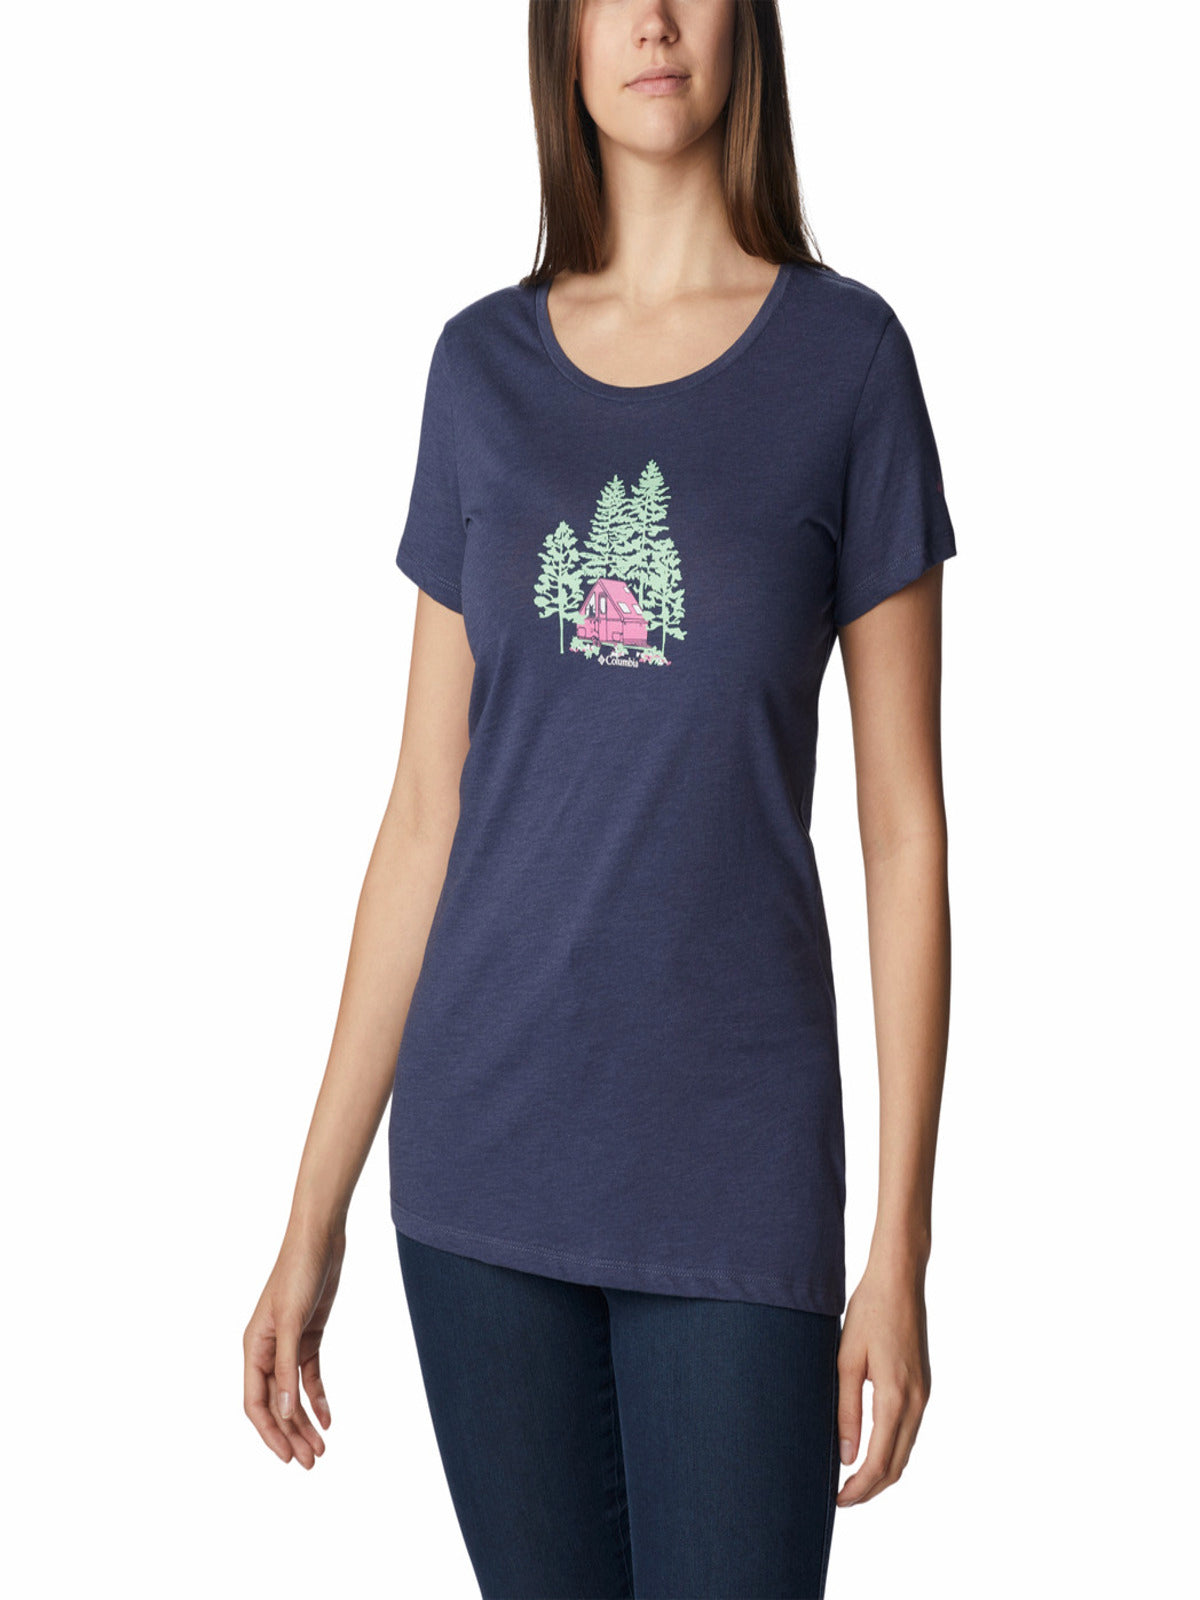 Women's Daisy Days™ Graphic T-Shirt